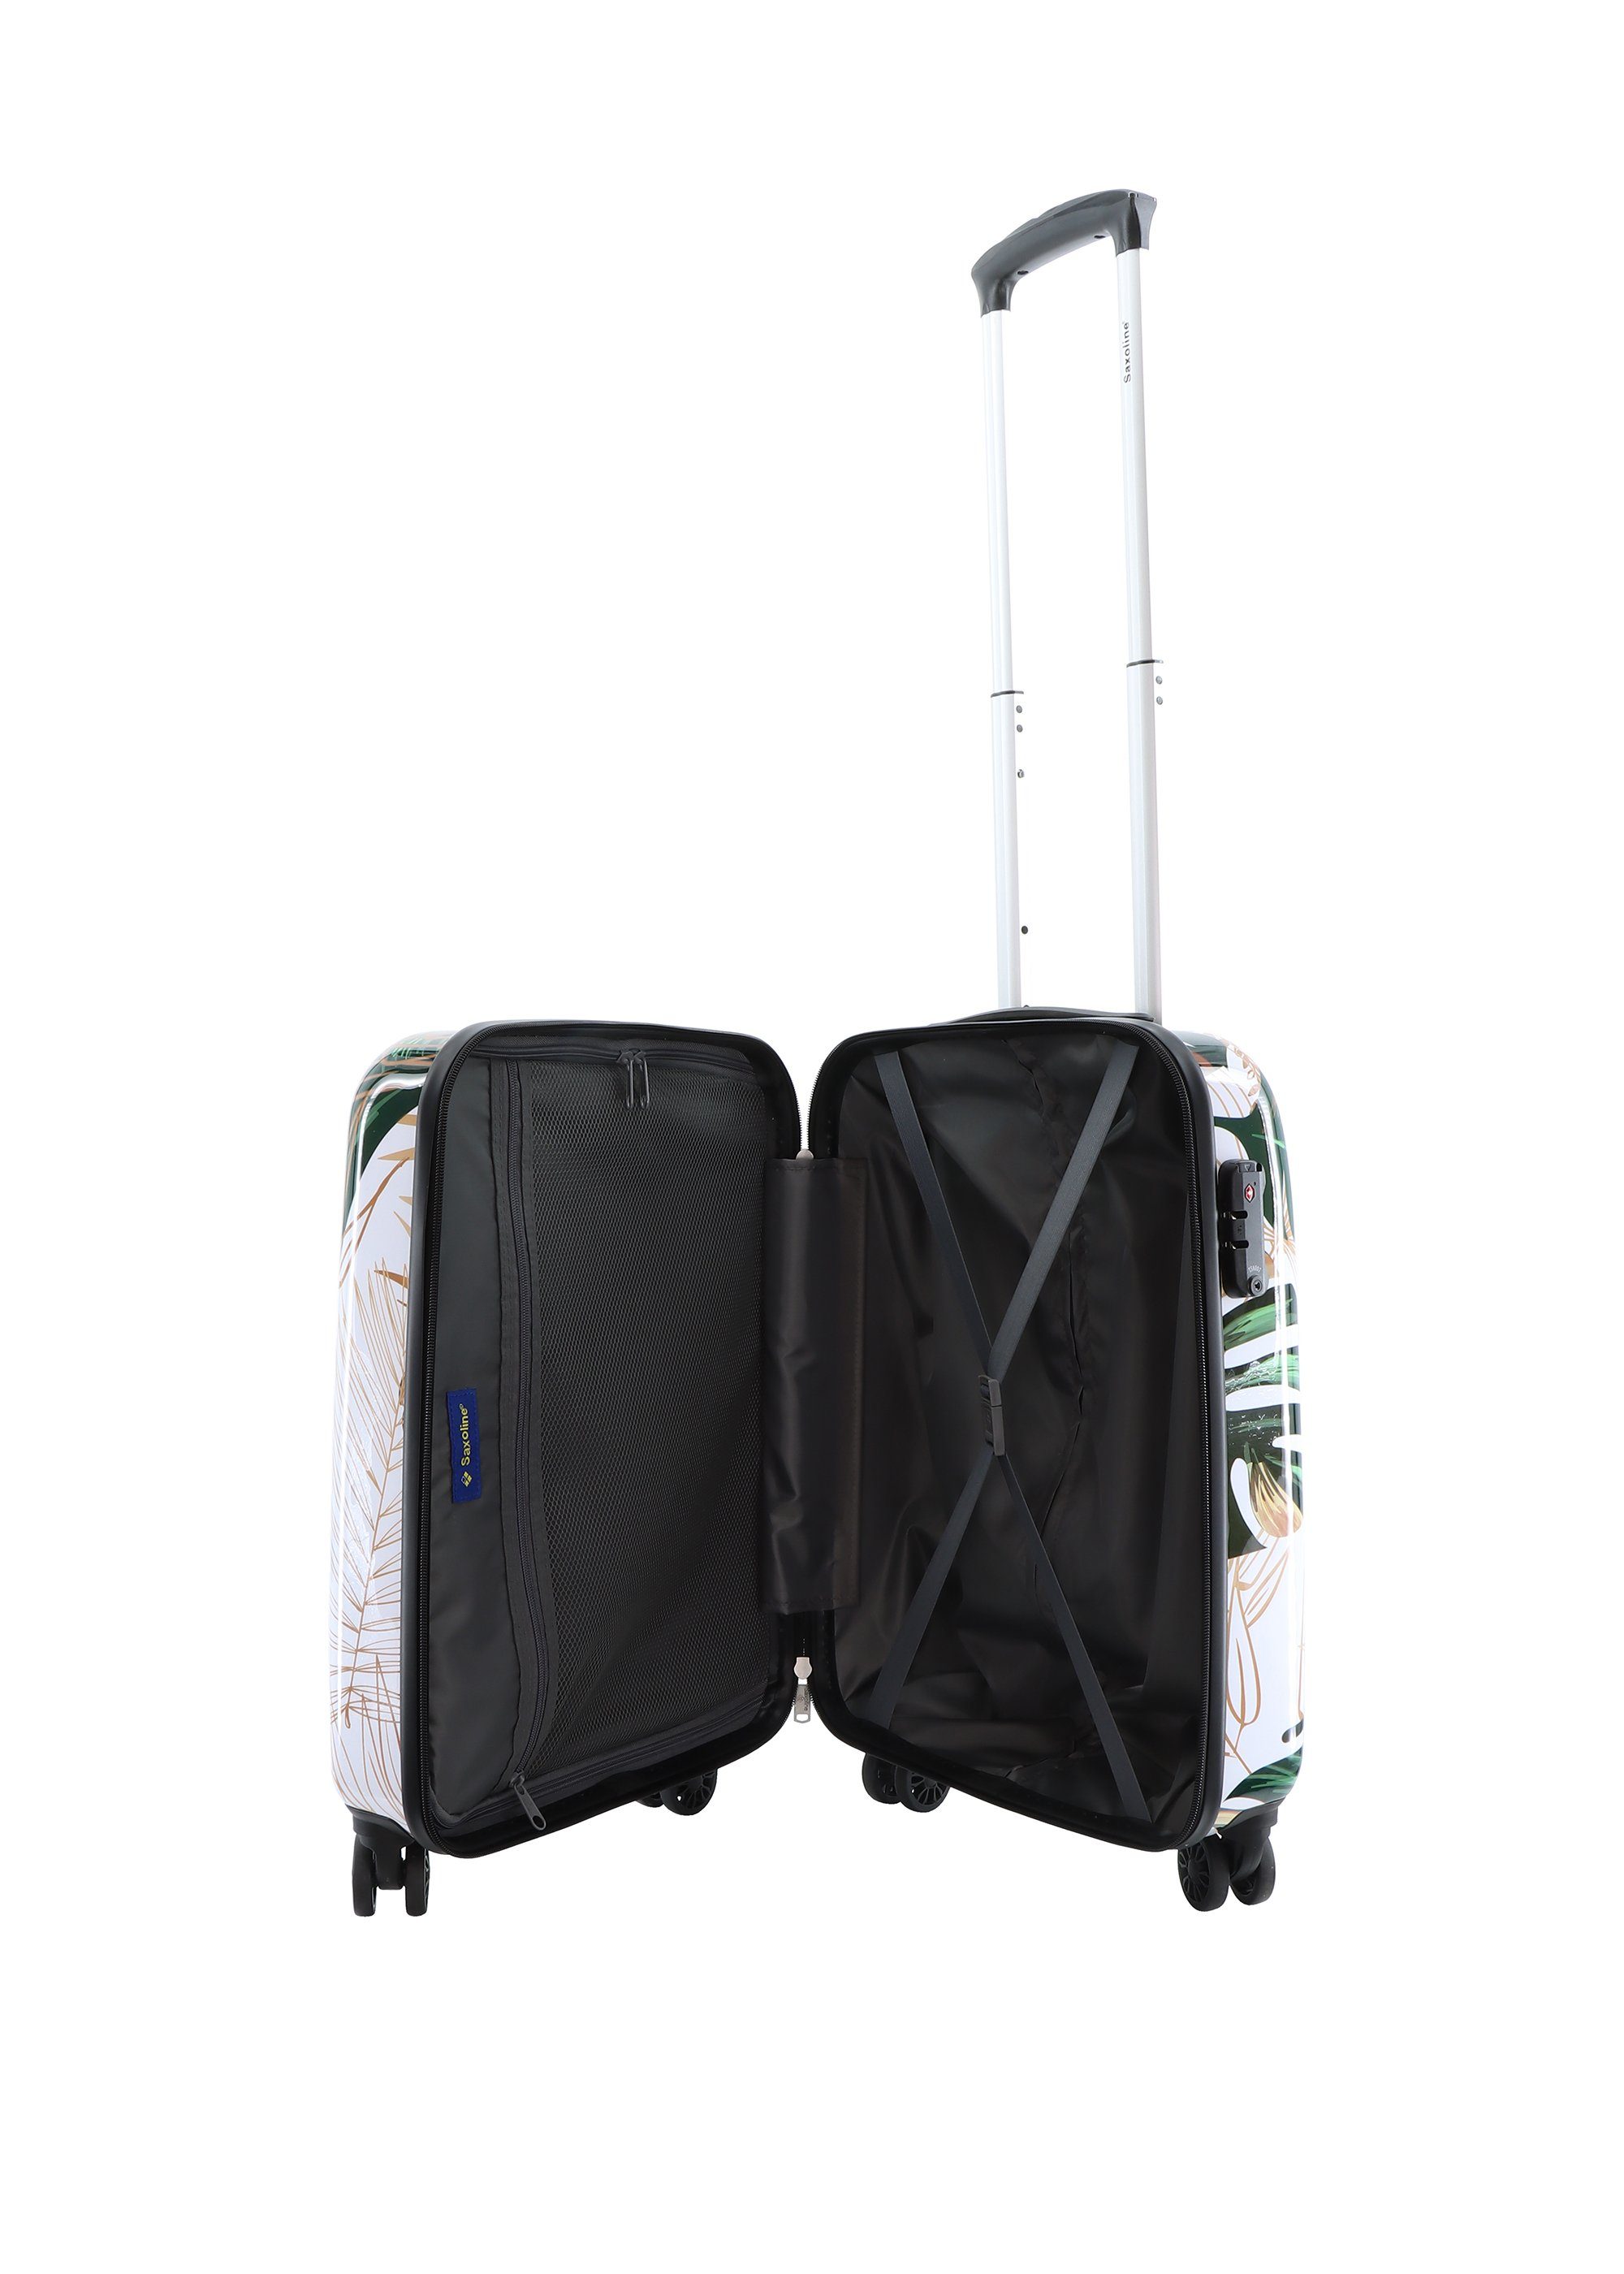 Saxoline® Koffer, mit praktischem TSA-Zahlenschloss